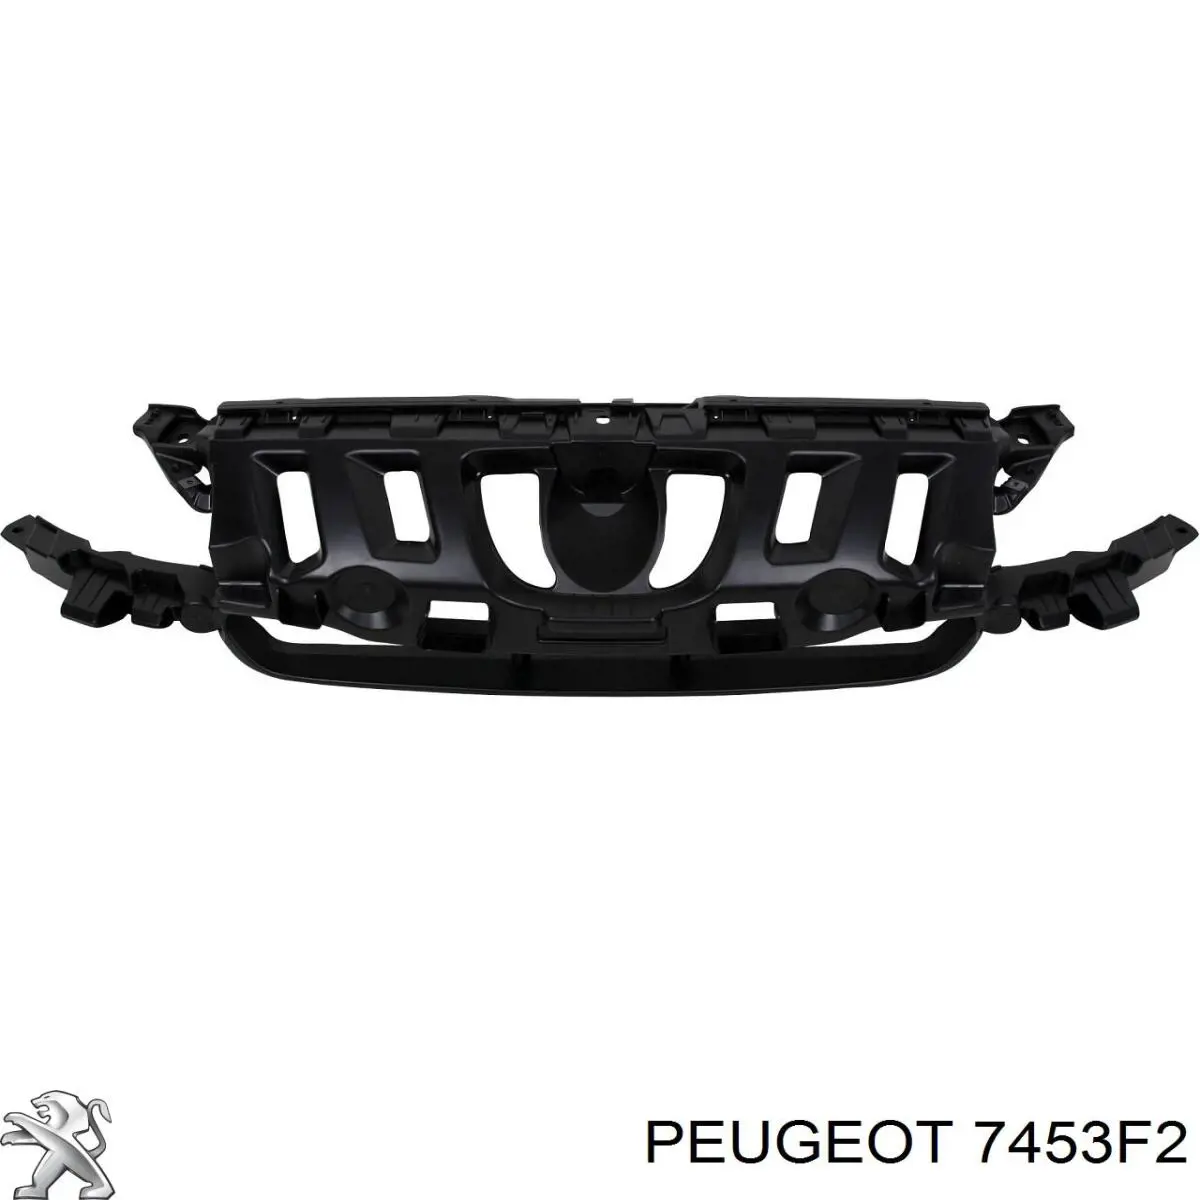 7453F2 Peugeot/Citroen protector para parachoques